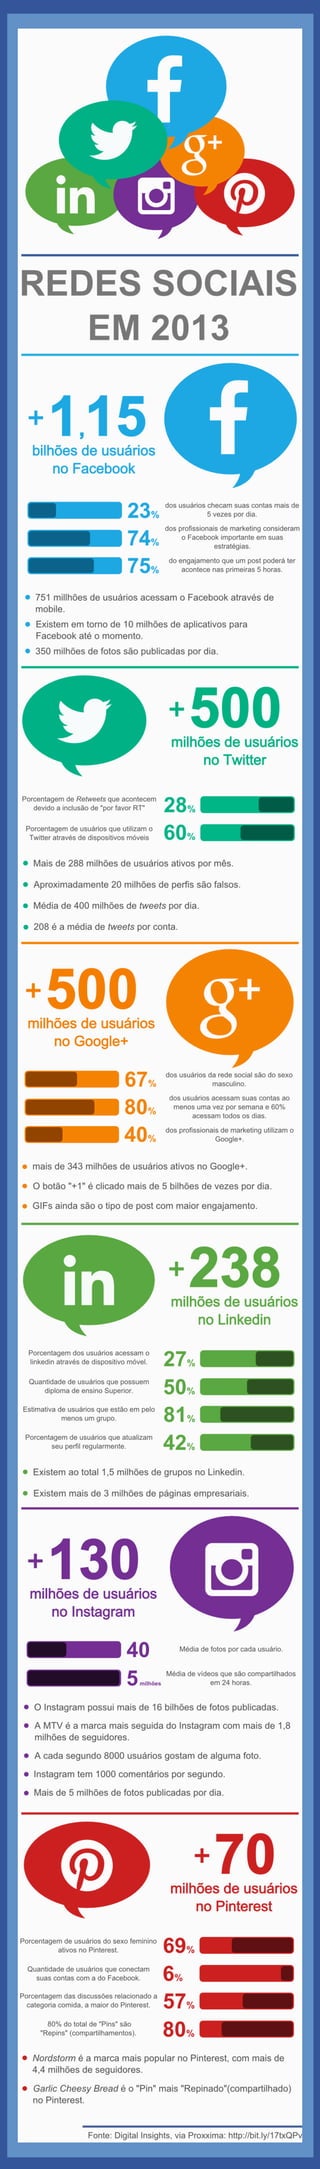 Infográfico: Redes Sociais em 2013